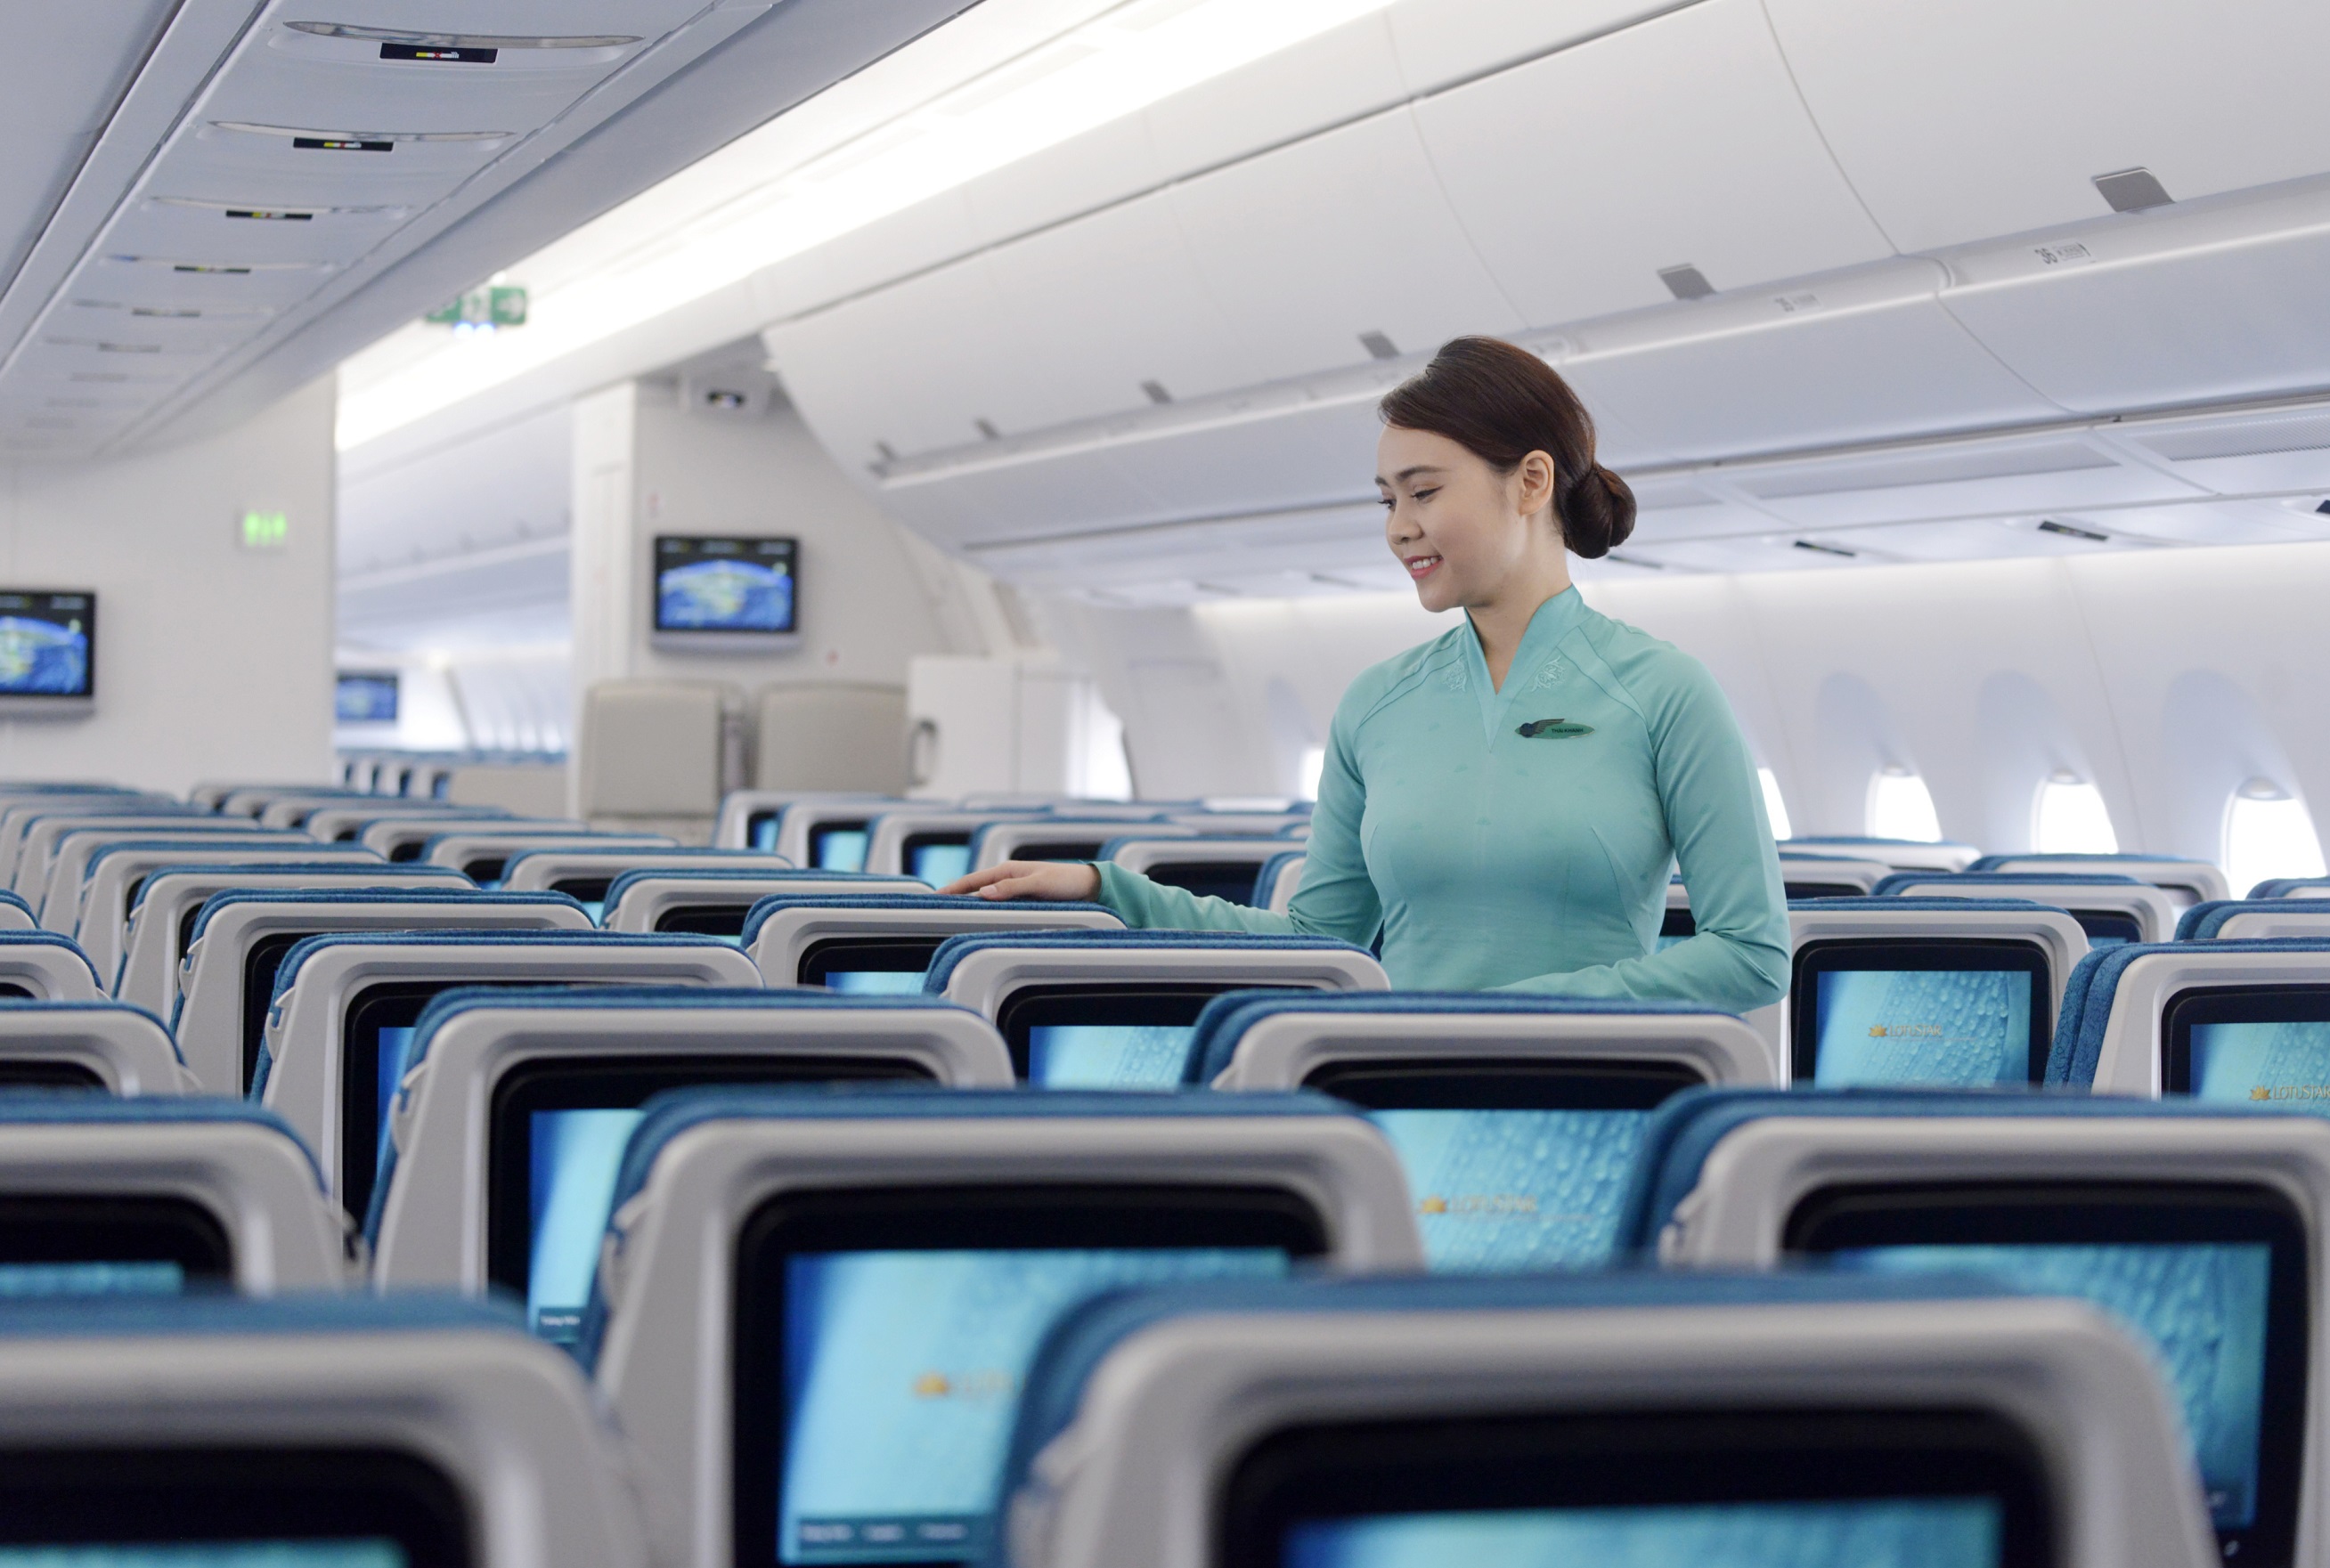 Nhân dịp ra mắt, từ tháng 10 đến hết tháng 12/2019, Vietnam Airlines sẽ dành tặng mỗi hành khách 30 phút sử dụng miễn phí WiFi cho gói dịch vụ nhắn tin trên chuyến bay để đáp ứng nhu cầu trải nghiệm tiện ích mới mẻ này.